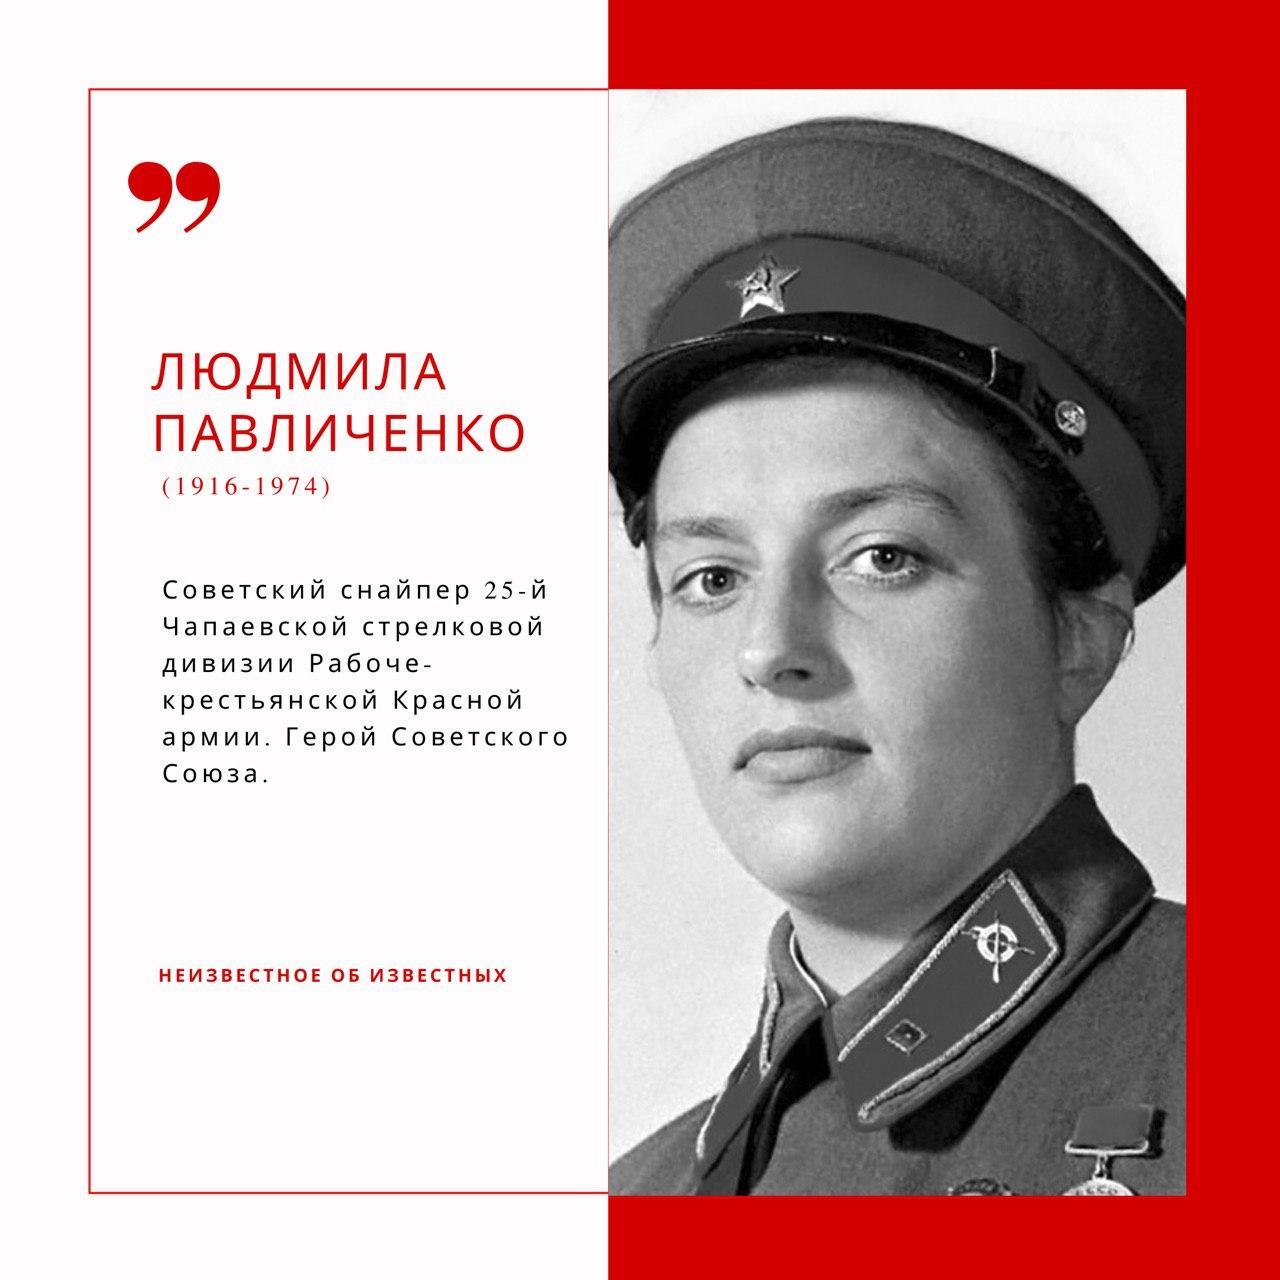 Павличенко Людмила герой советского Союза